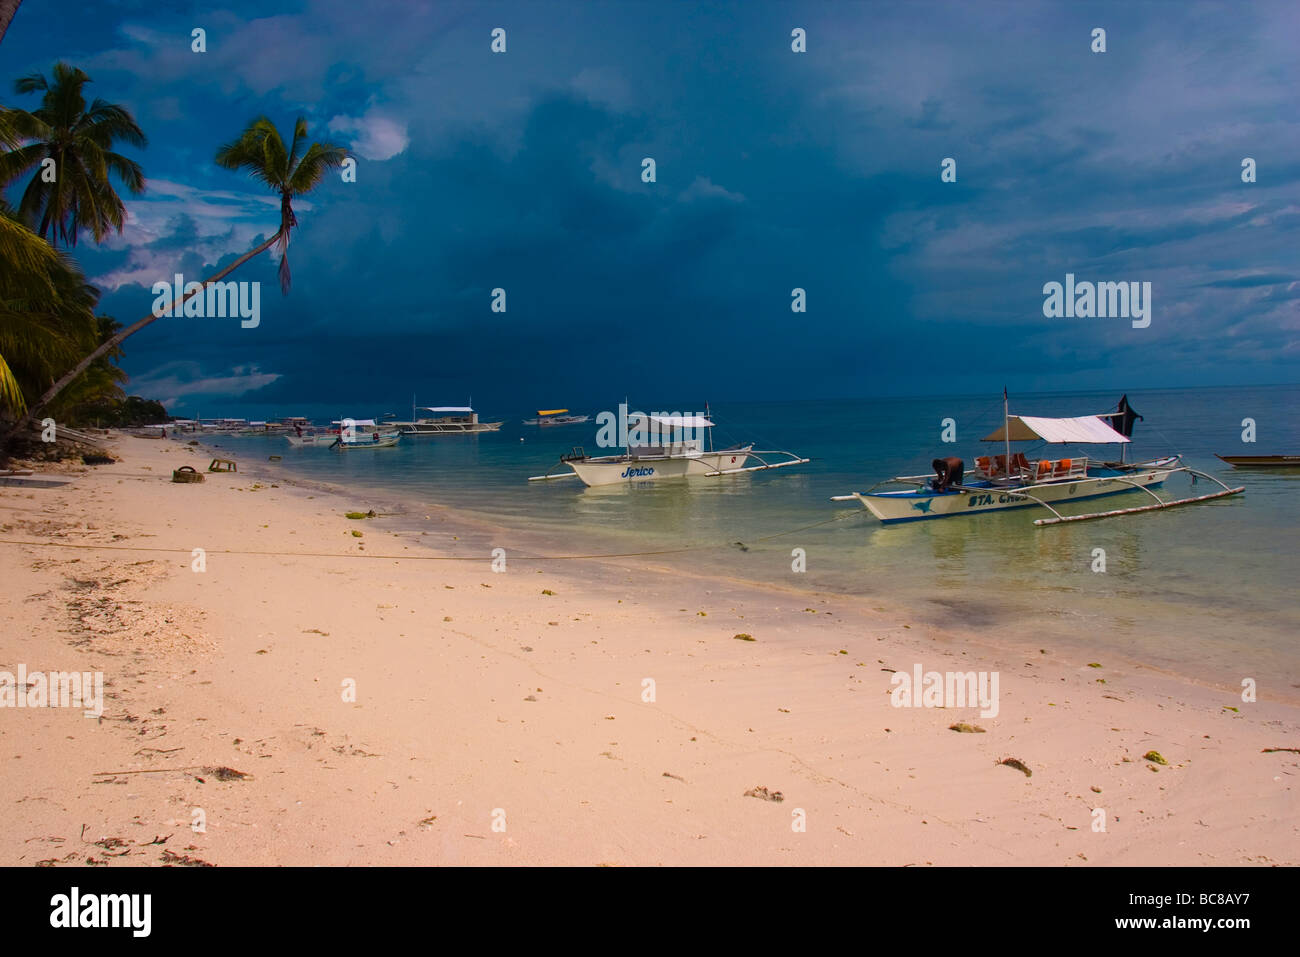 Bancas Local sur une plage de sable blanc bordée de palmiers, les nuages de tempête en arrière-plan. Banque D'Images